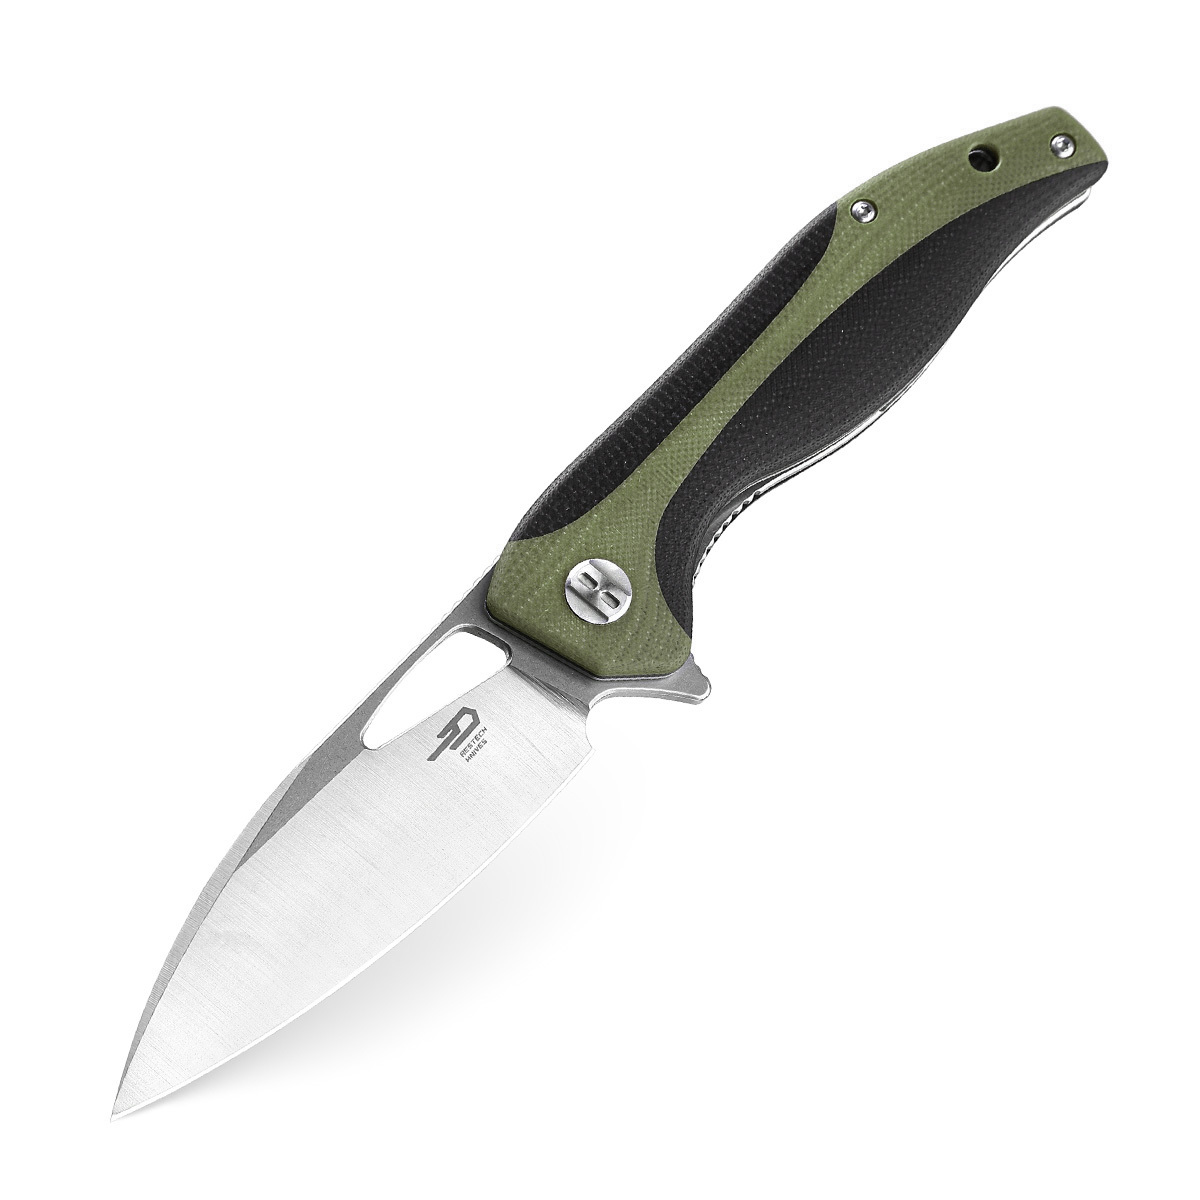 Складной нож Bestech Komodo, сталь D2, рукоять черно-зеленая G10 складной нож bestech swift сталь d2 micarta